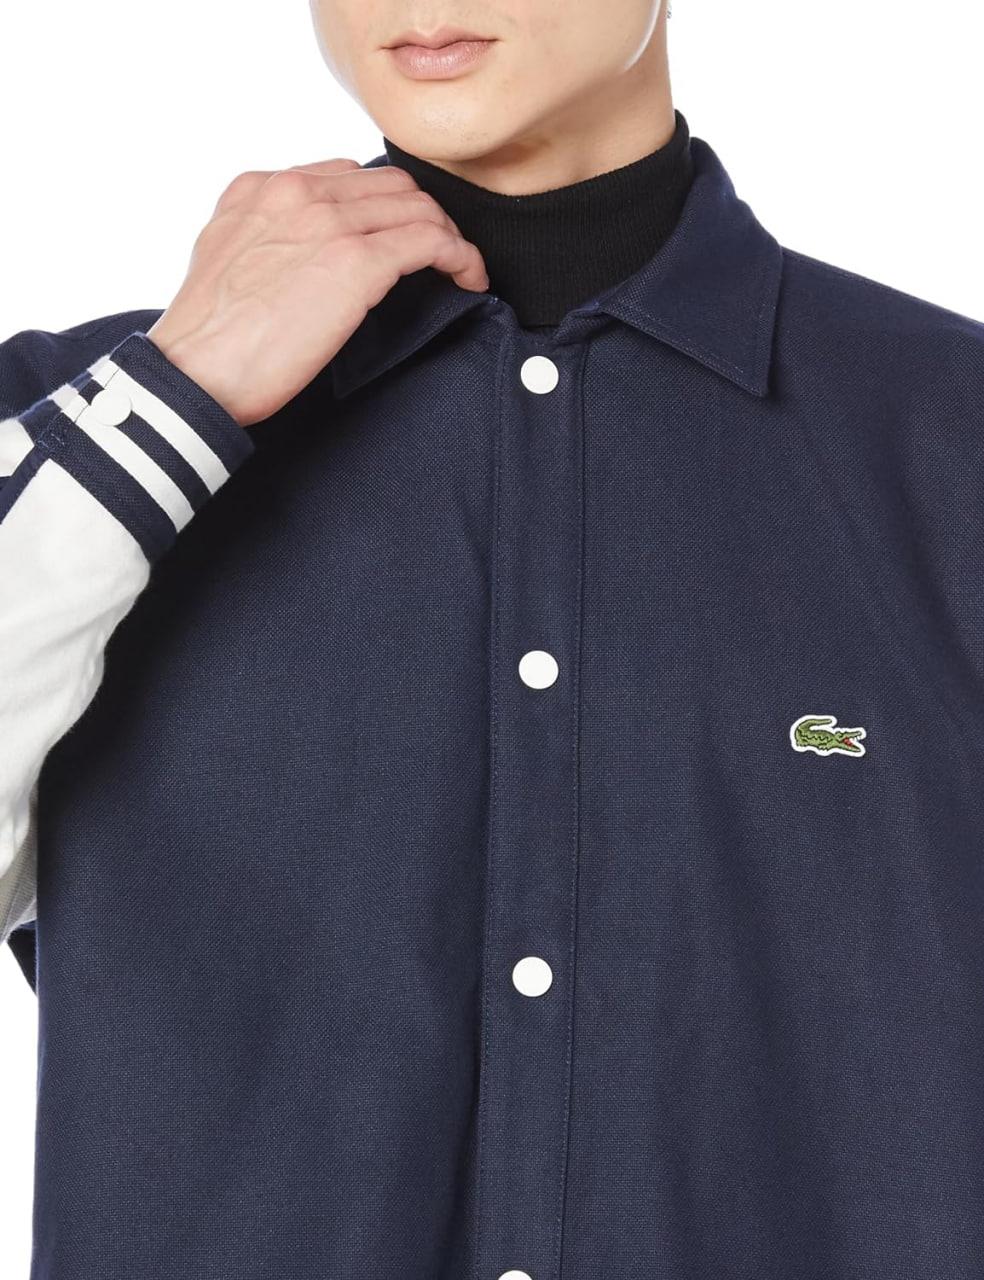 Áo Khoác Lacoste Reversible Shirt 2 Side Navy [CH7189 99]